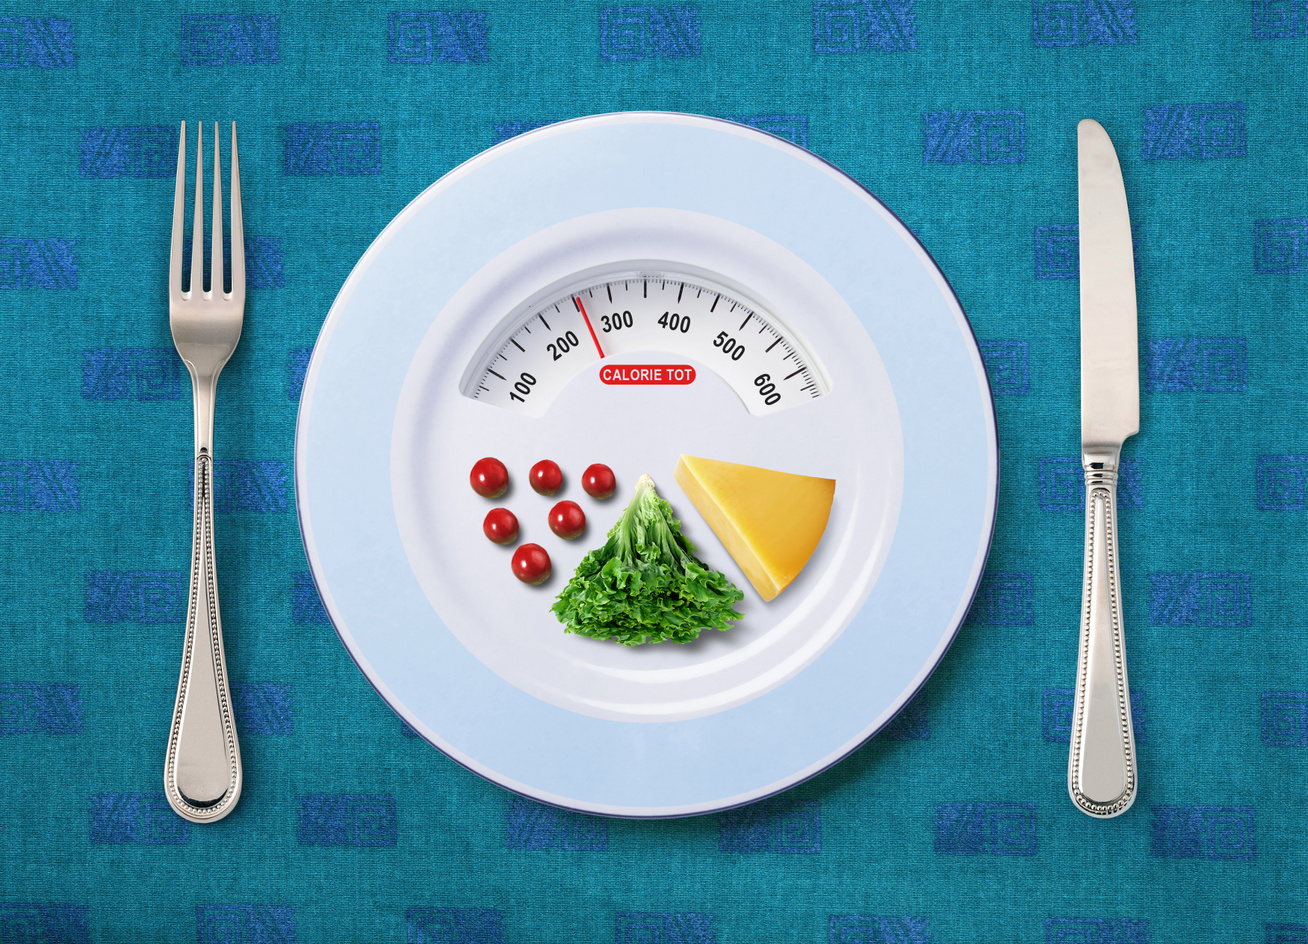 Íme egy kalóriás étrend a fogyókúrázóknak | Magyar Nemzet